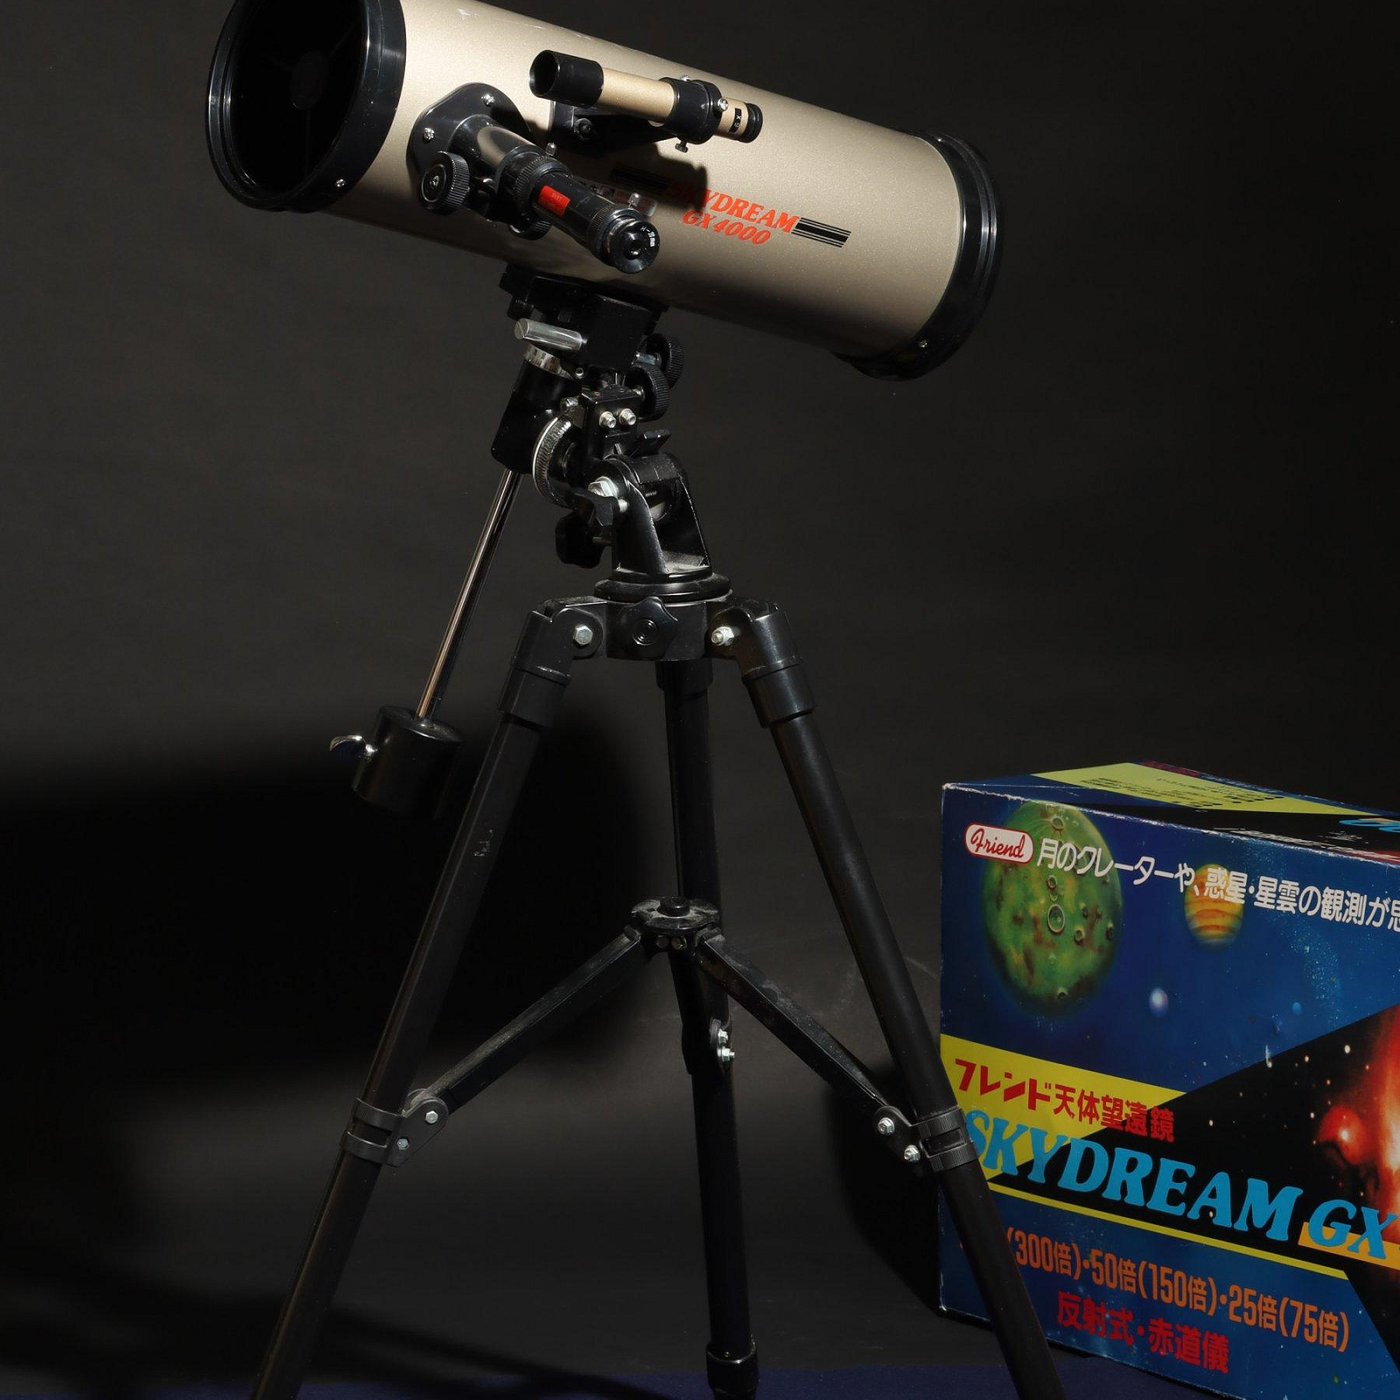 12/24結標原價八萬二日幣反射式赤道儀フレンド天体望遠鏡C120832 -聖誕